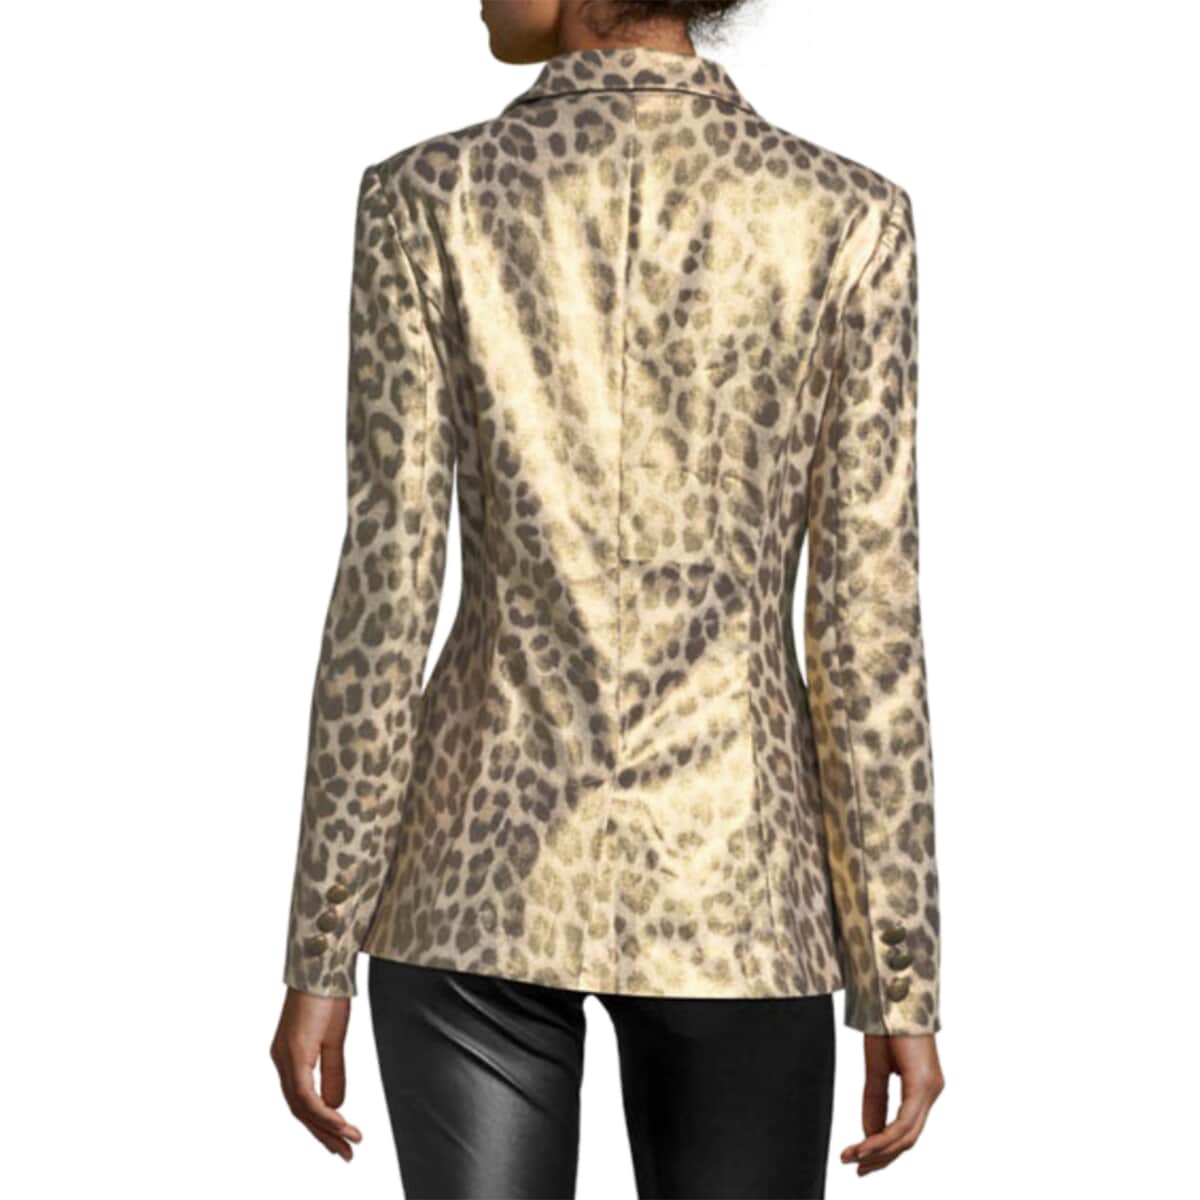 BEREK Tan Metallic Coated Animal Print Blazer Jacket For Women with Notch Collar – M image number 1